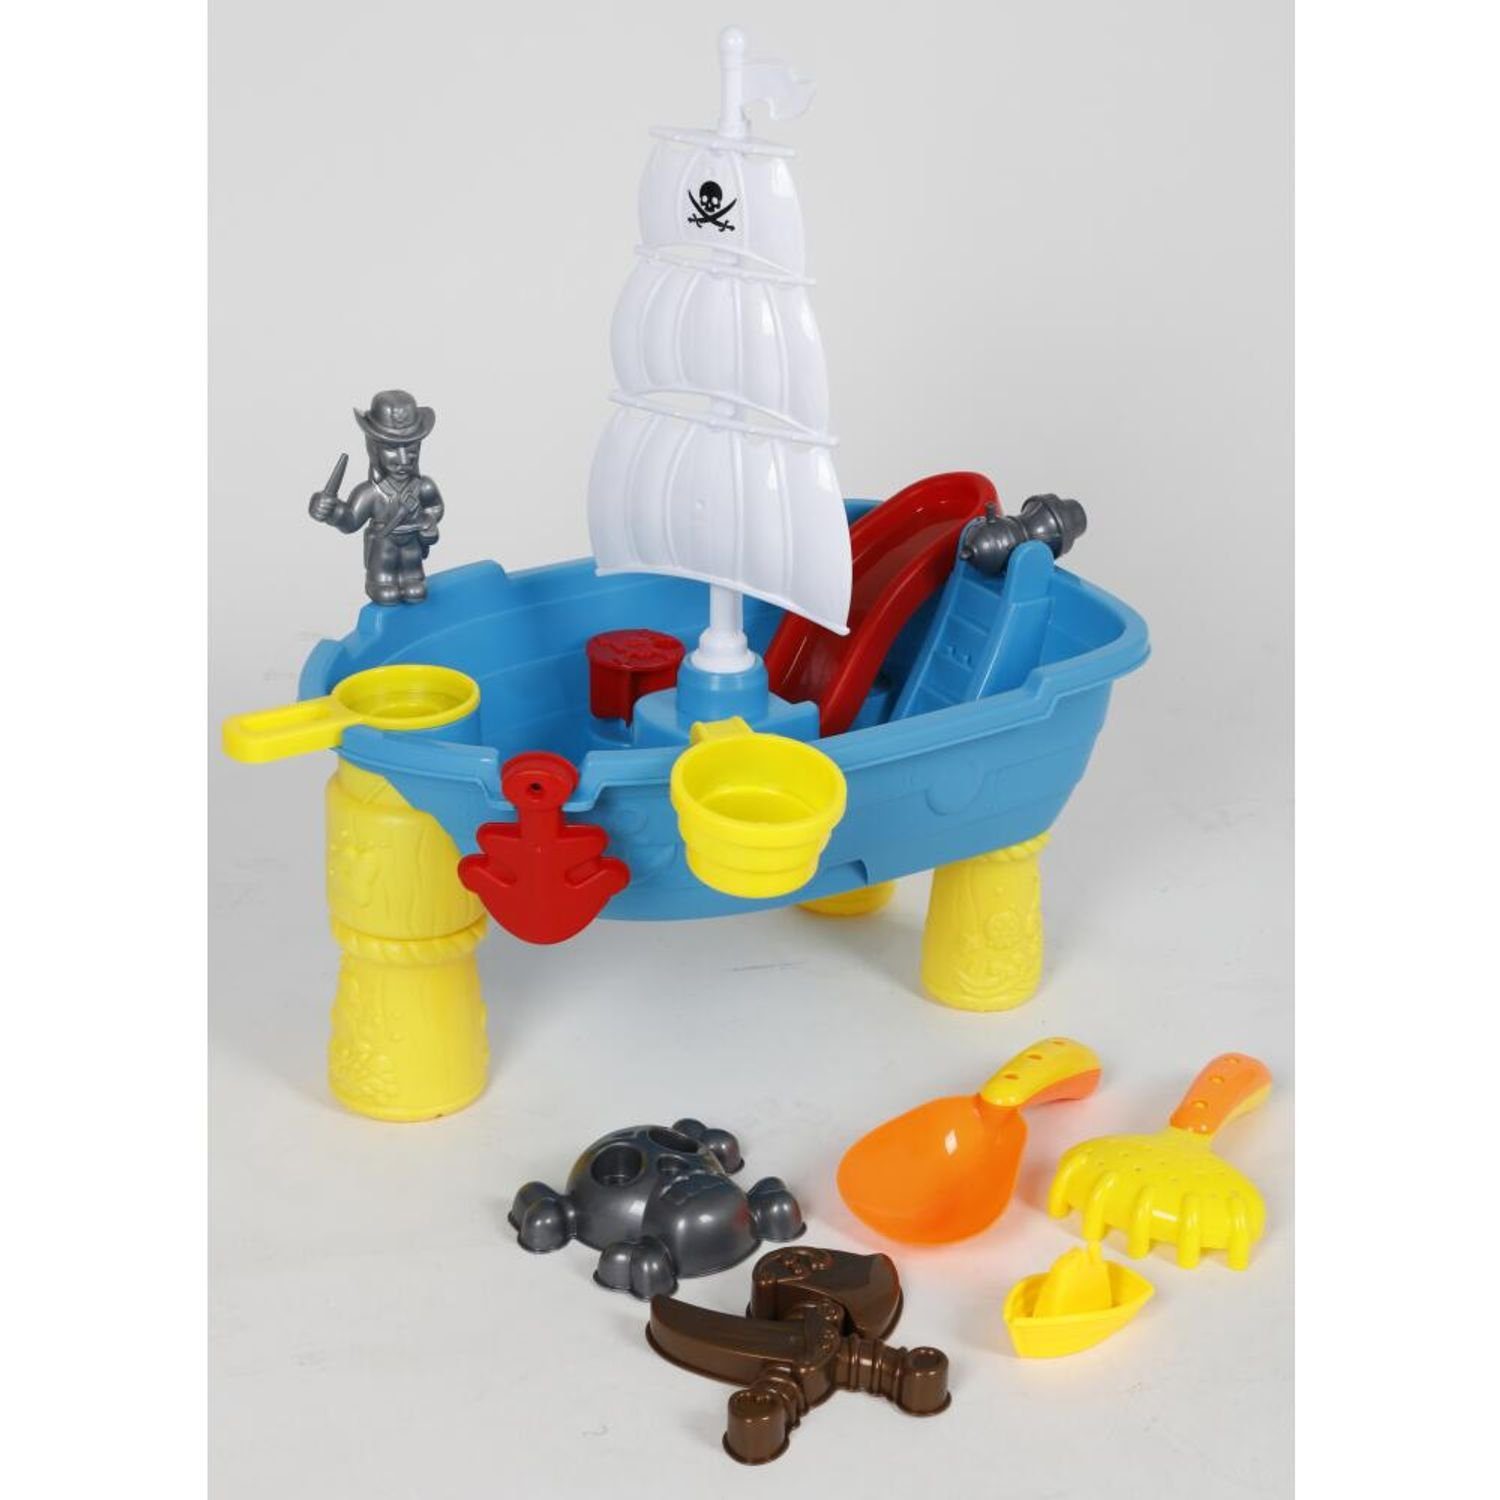 Kinder Förmchen Spielzeug Sandkasten Schaufel Gartentisch Spieltisch EDCO Wasser Harke